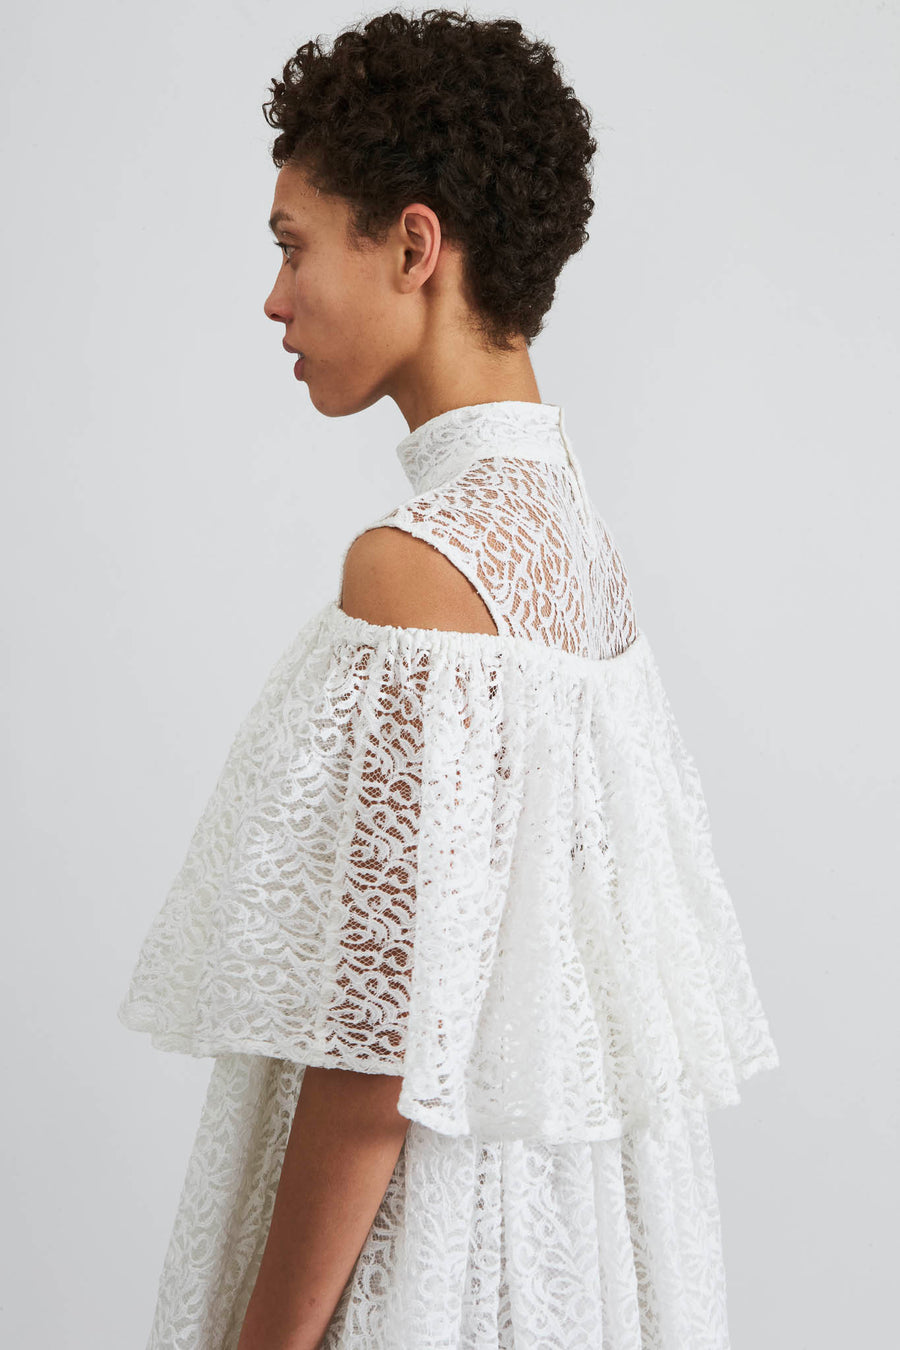 BATSHEVA - Percy Dress in White Lace